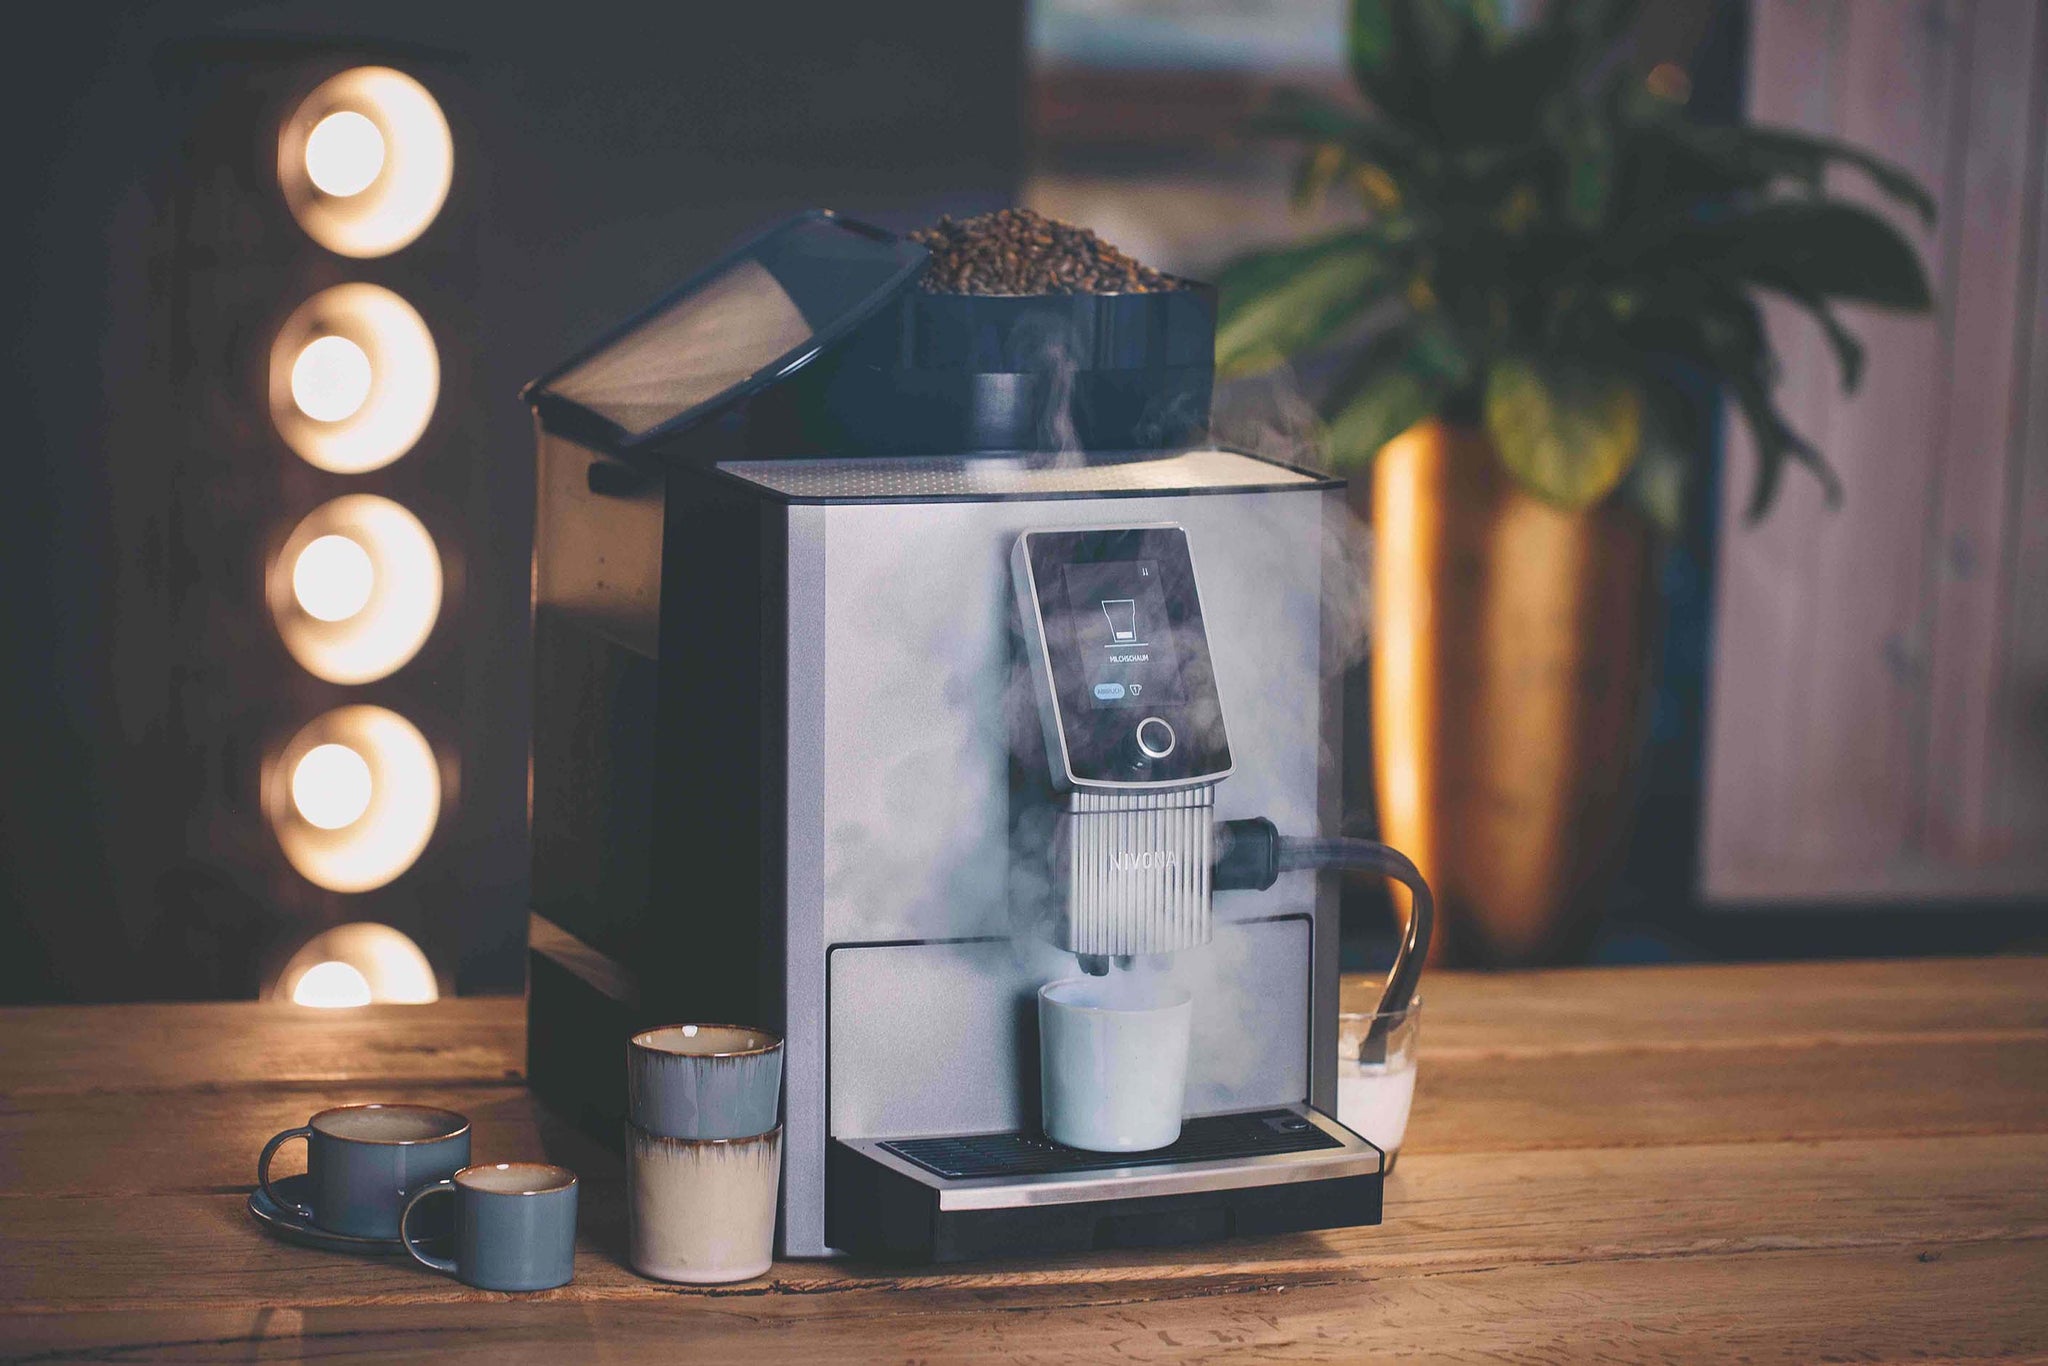 NIVONA 1040 Kaffeecollautomat bei der Zubereitung